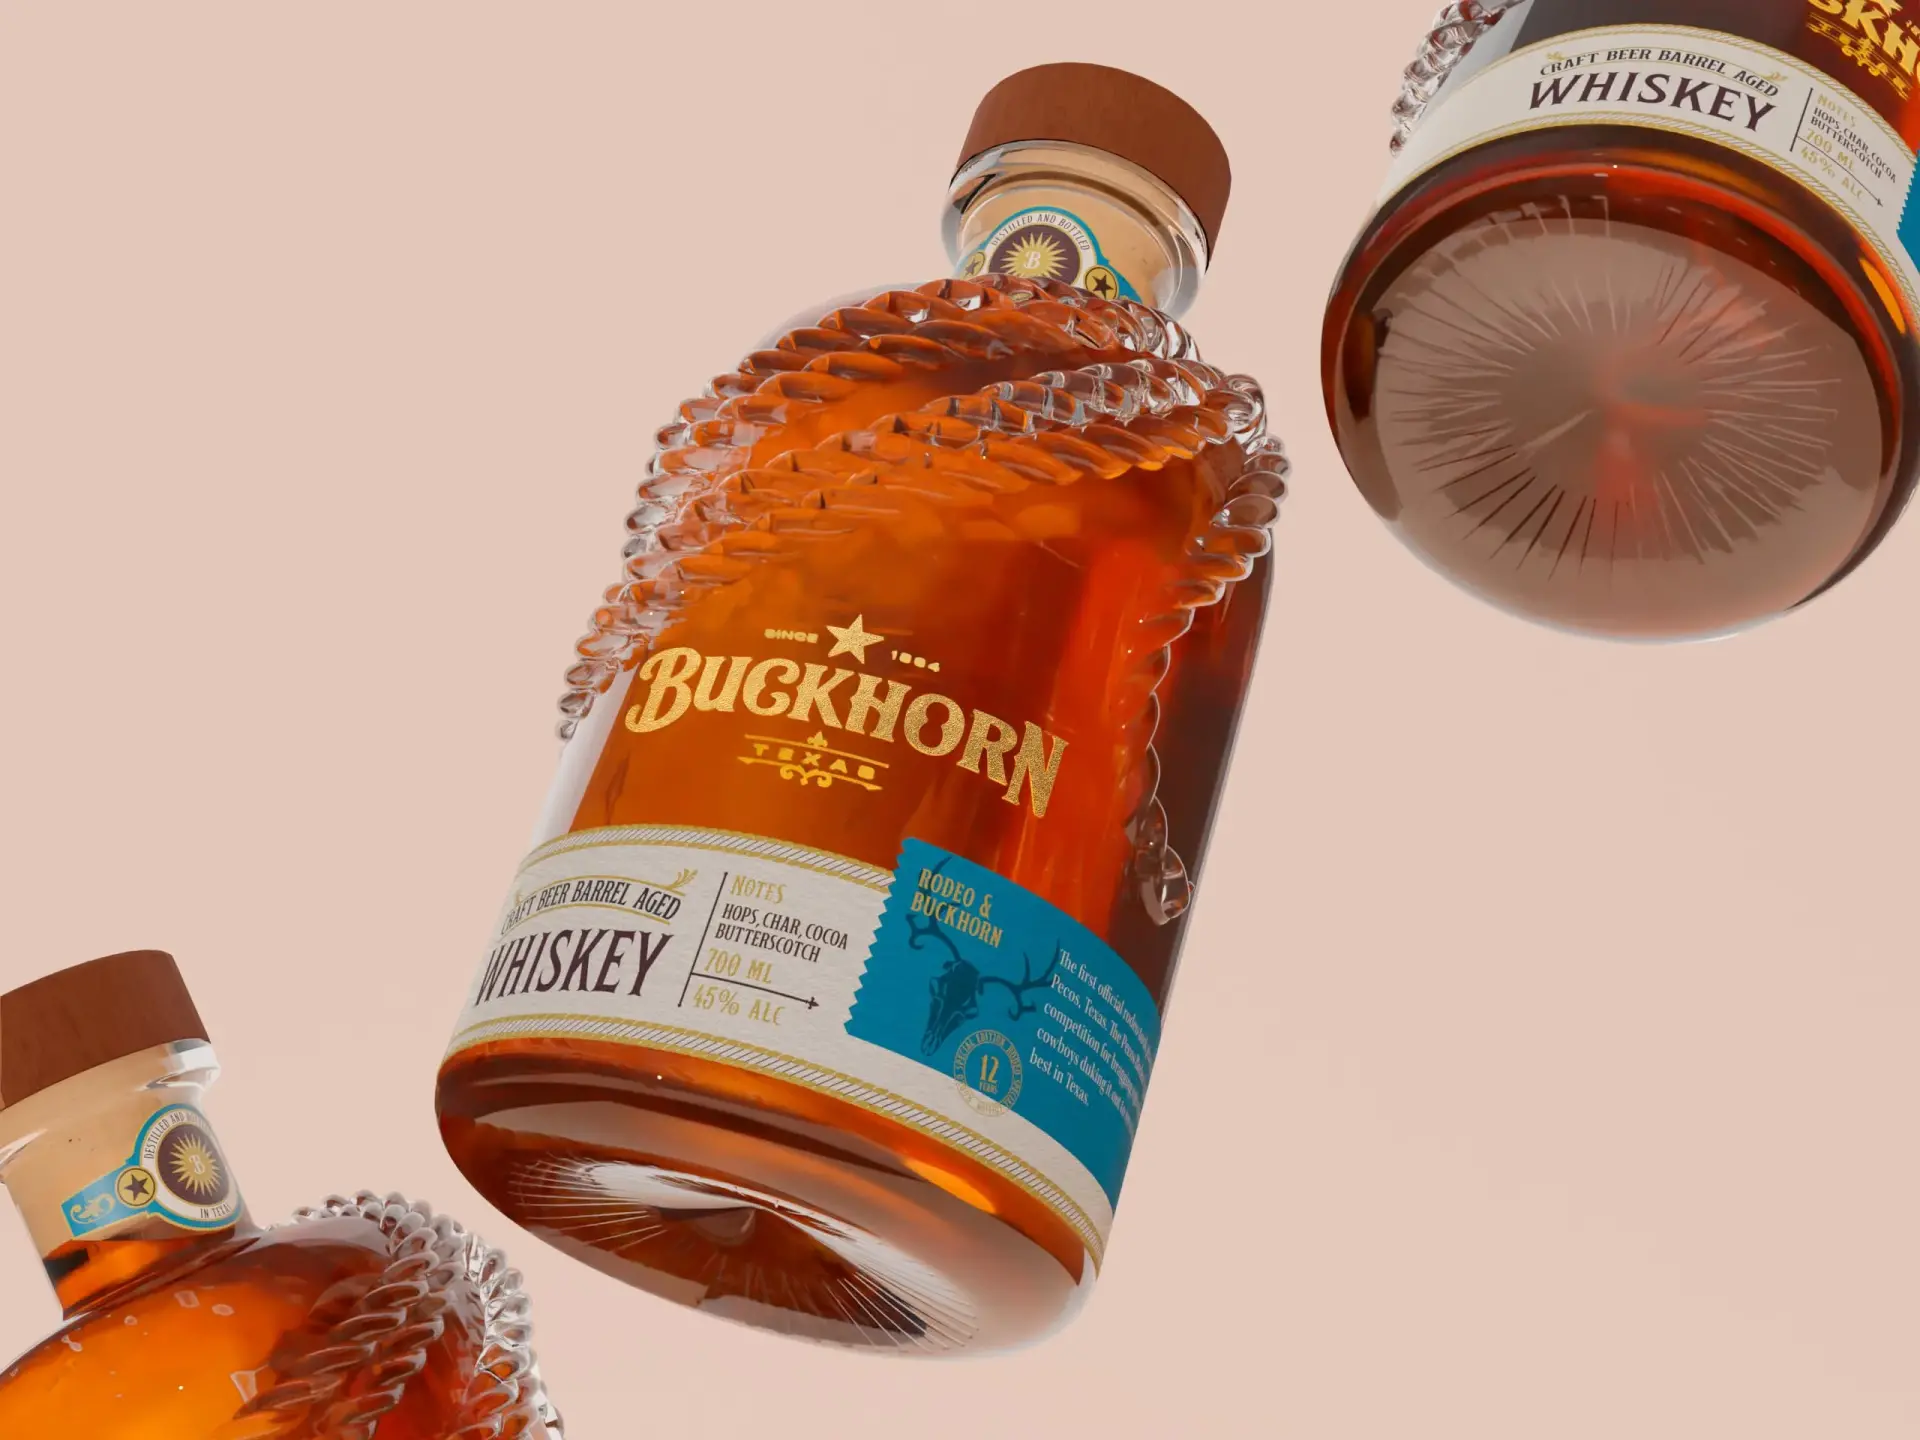 Blogduwebdesign packaging habillage bouteille original buckhorn 2